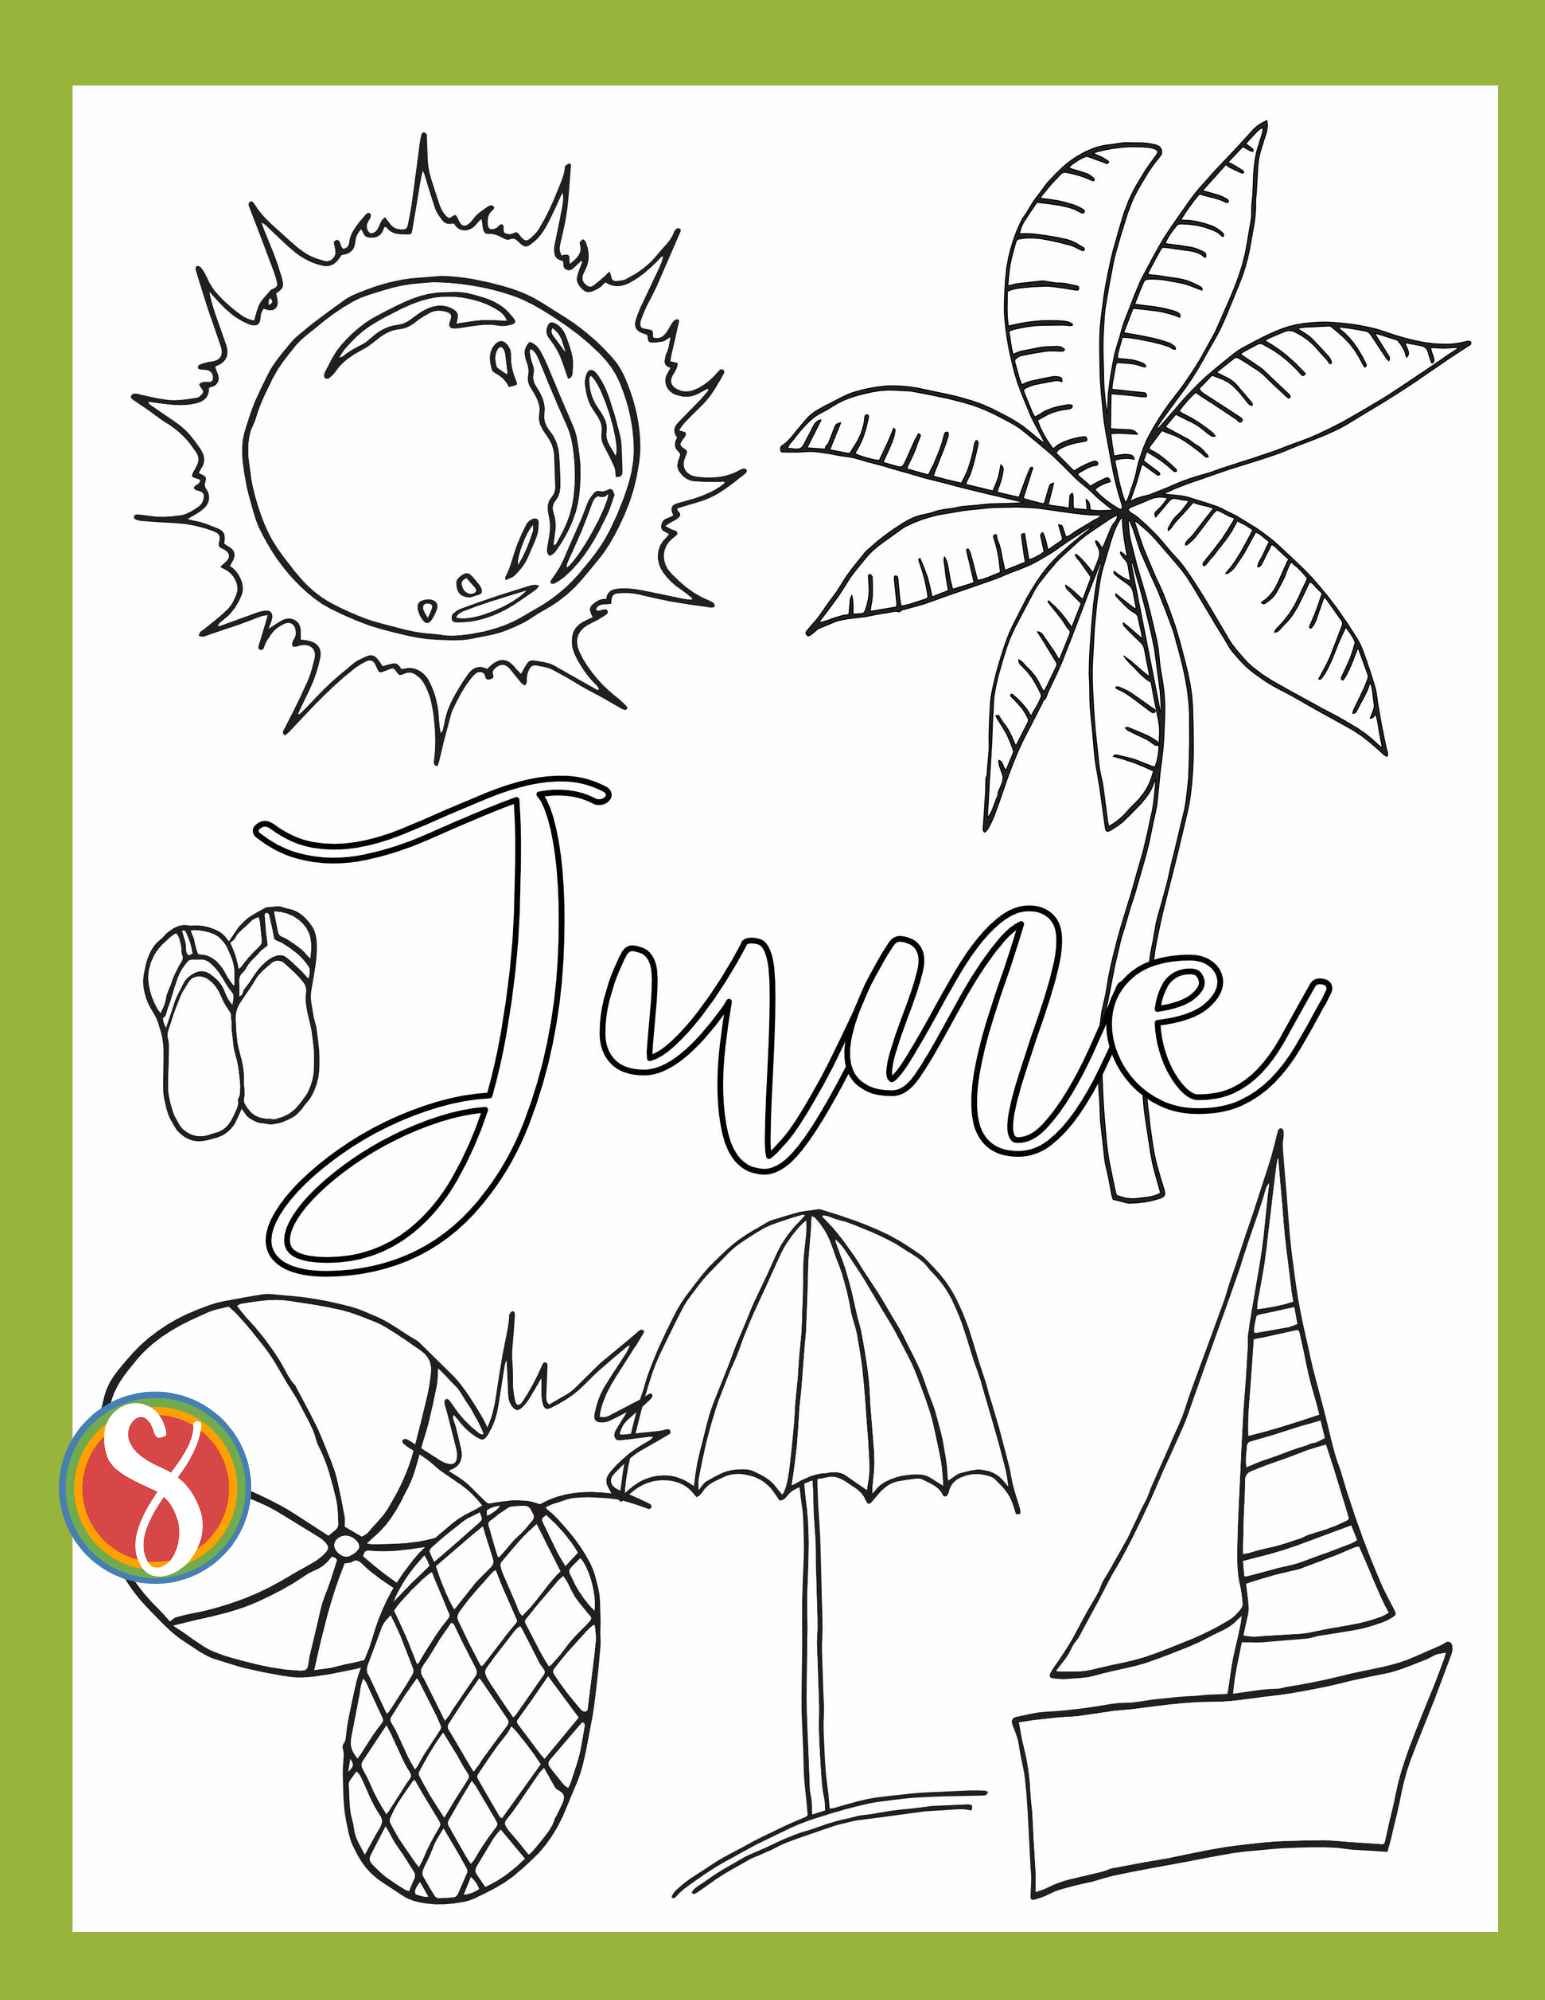 Free june coloring pages â stevie doodles